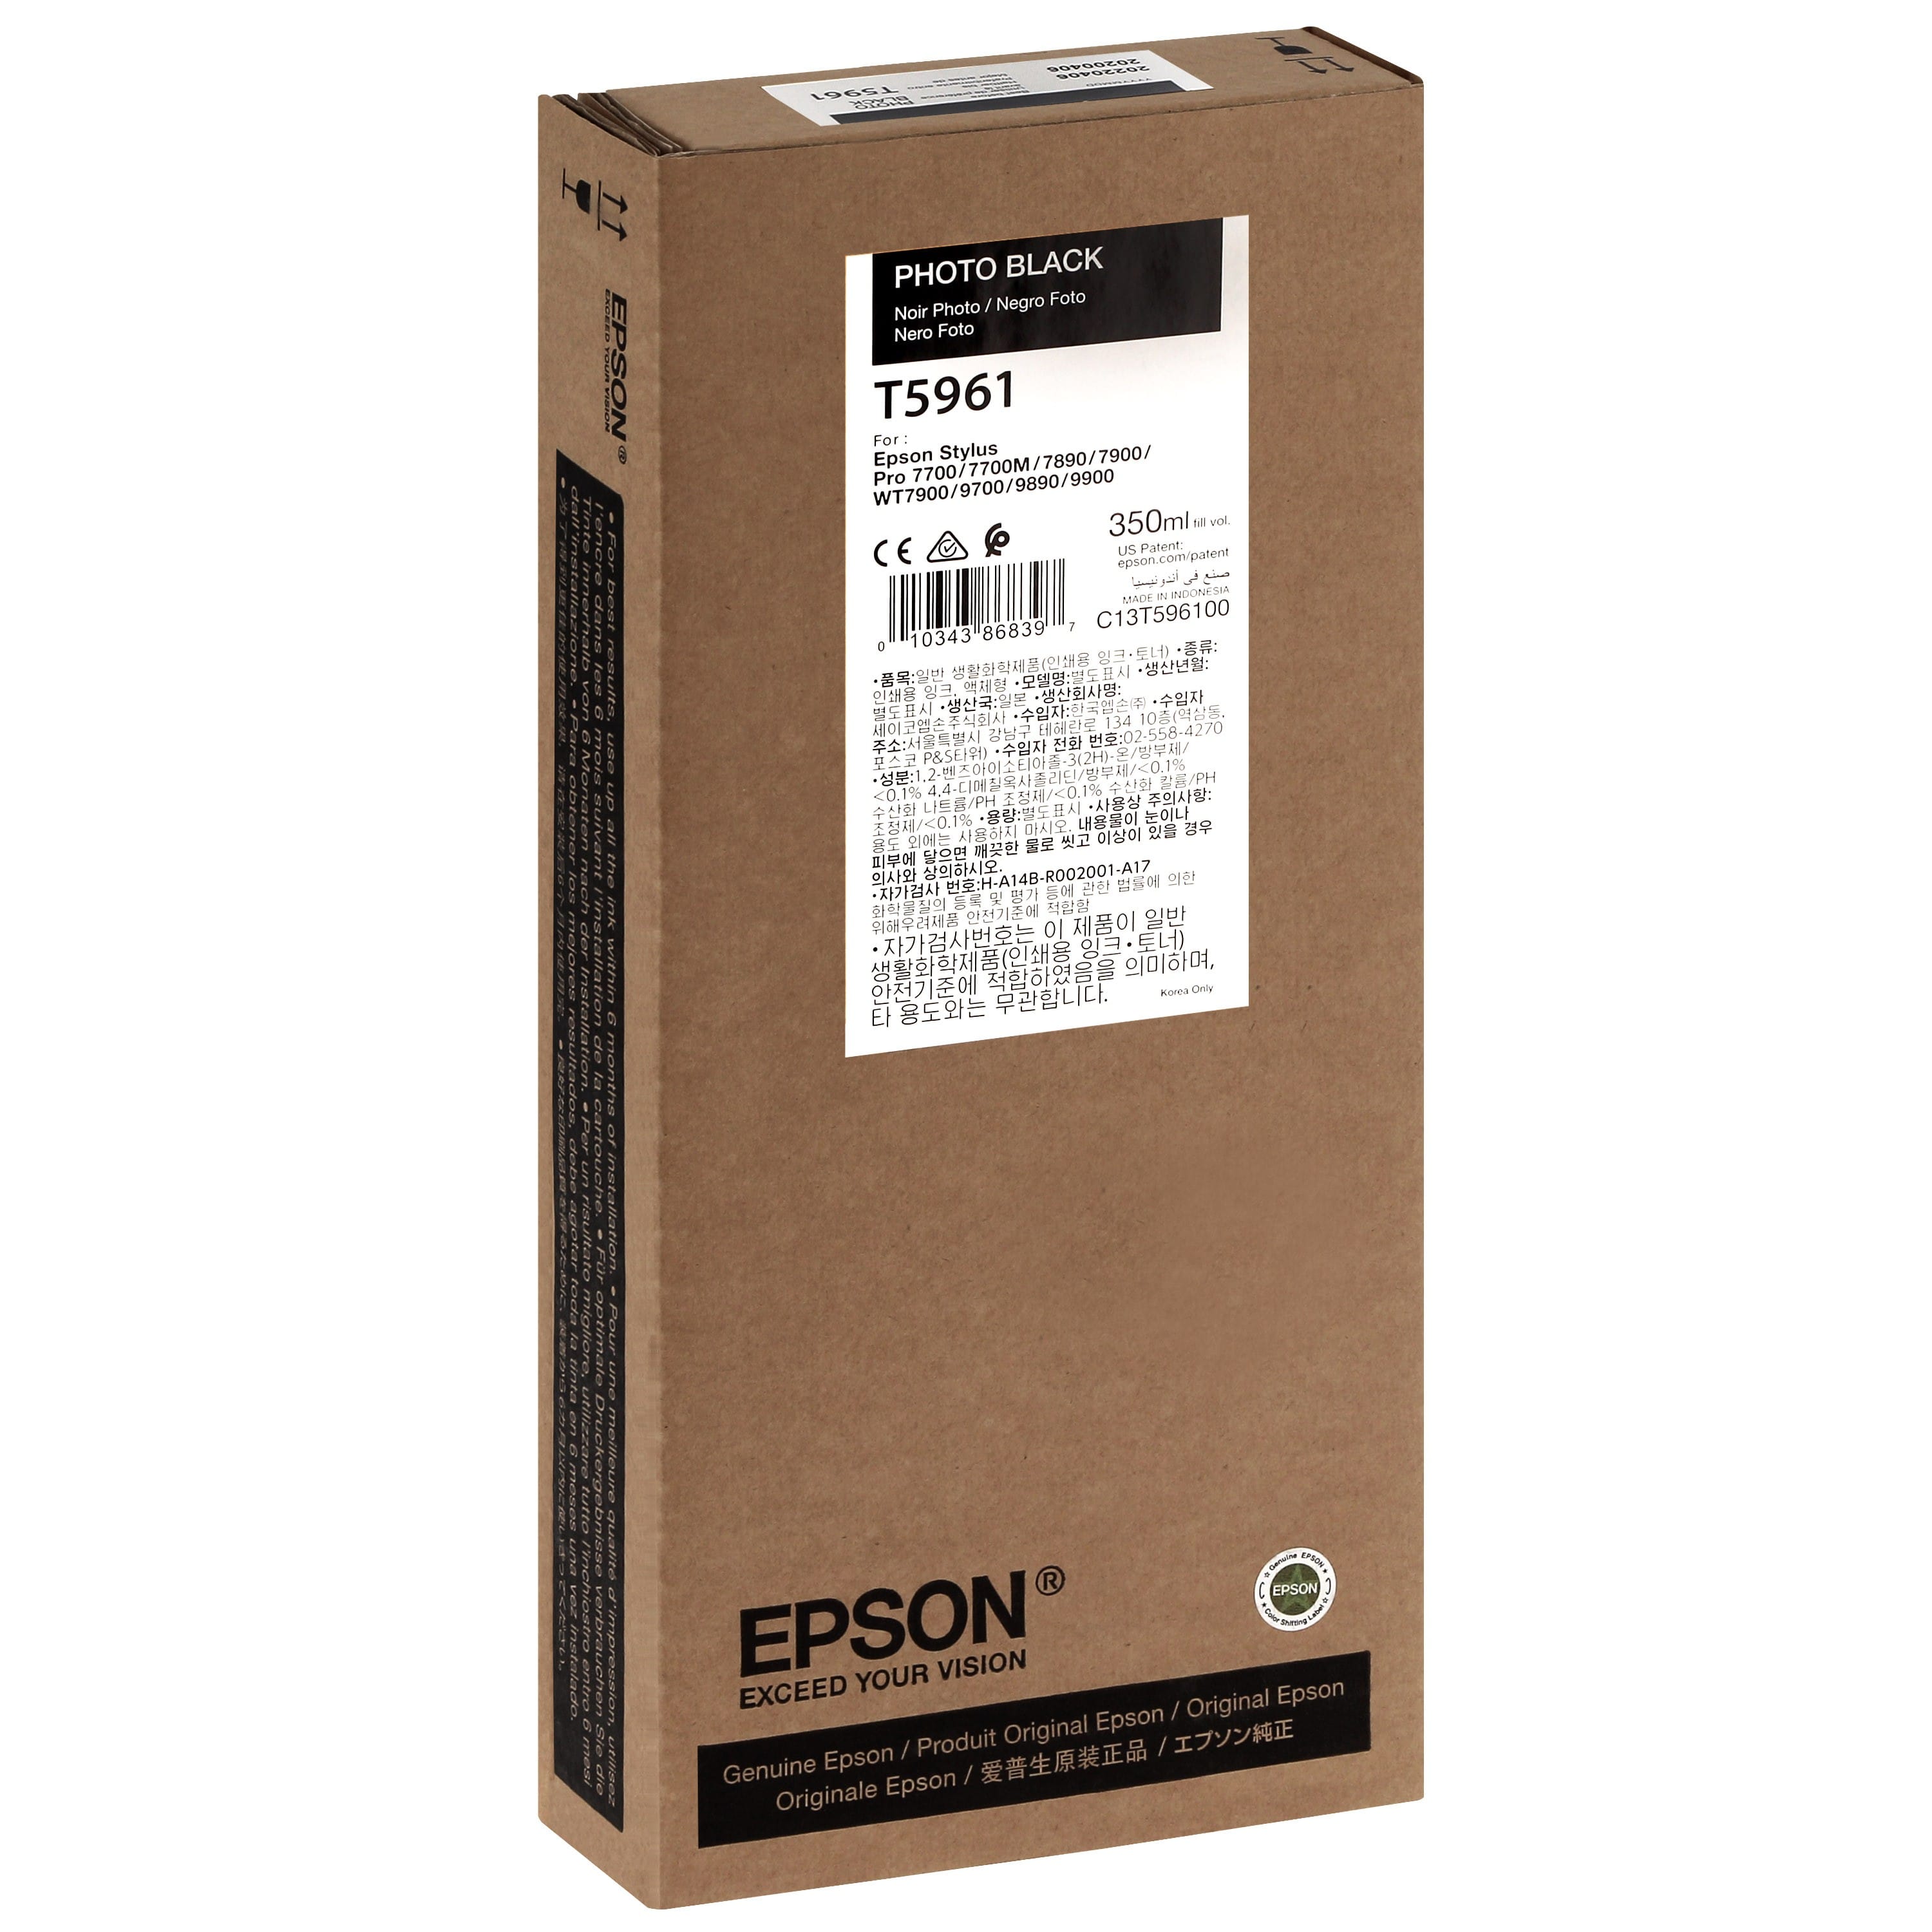 EPSON - Cartouche d'encre traceur T5961 Pour imprimante 7700/9700/7890/9890/7900/9900 Noir Photo - 350ml